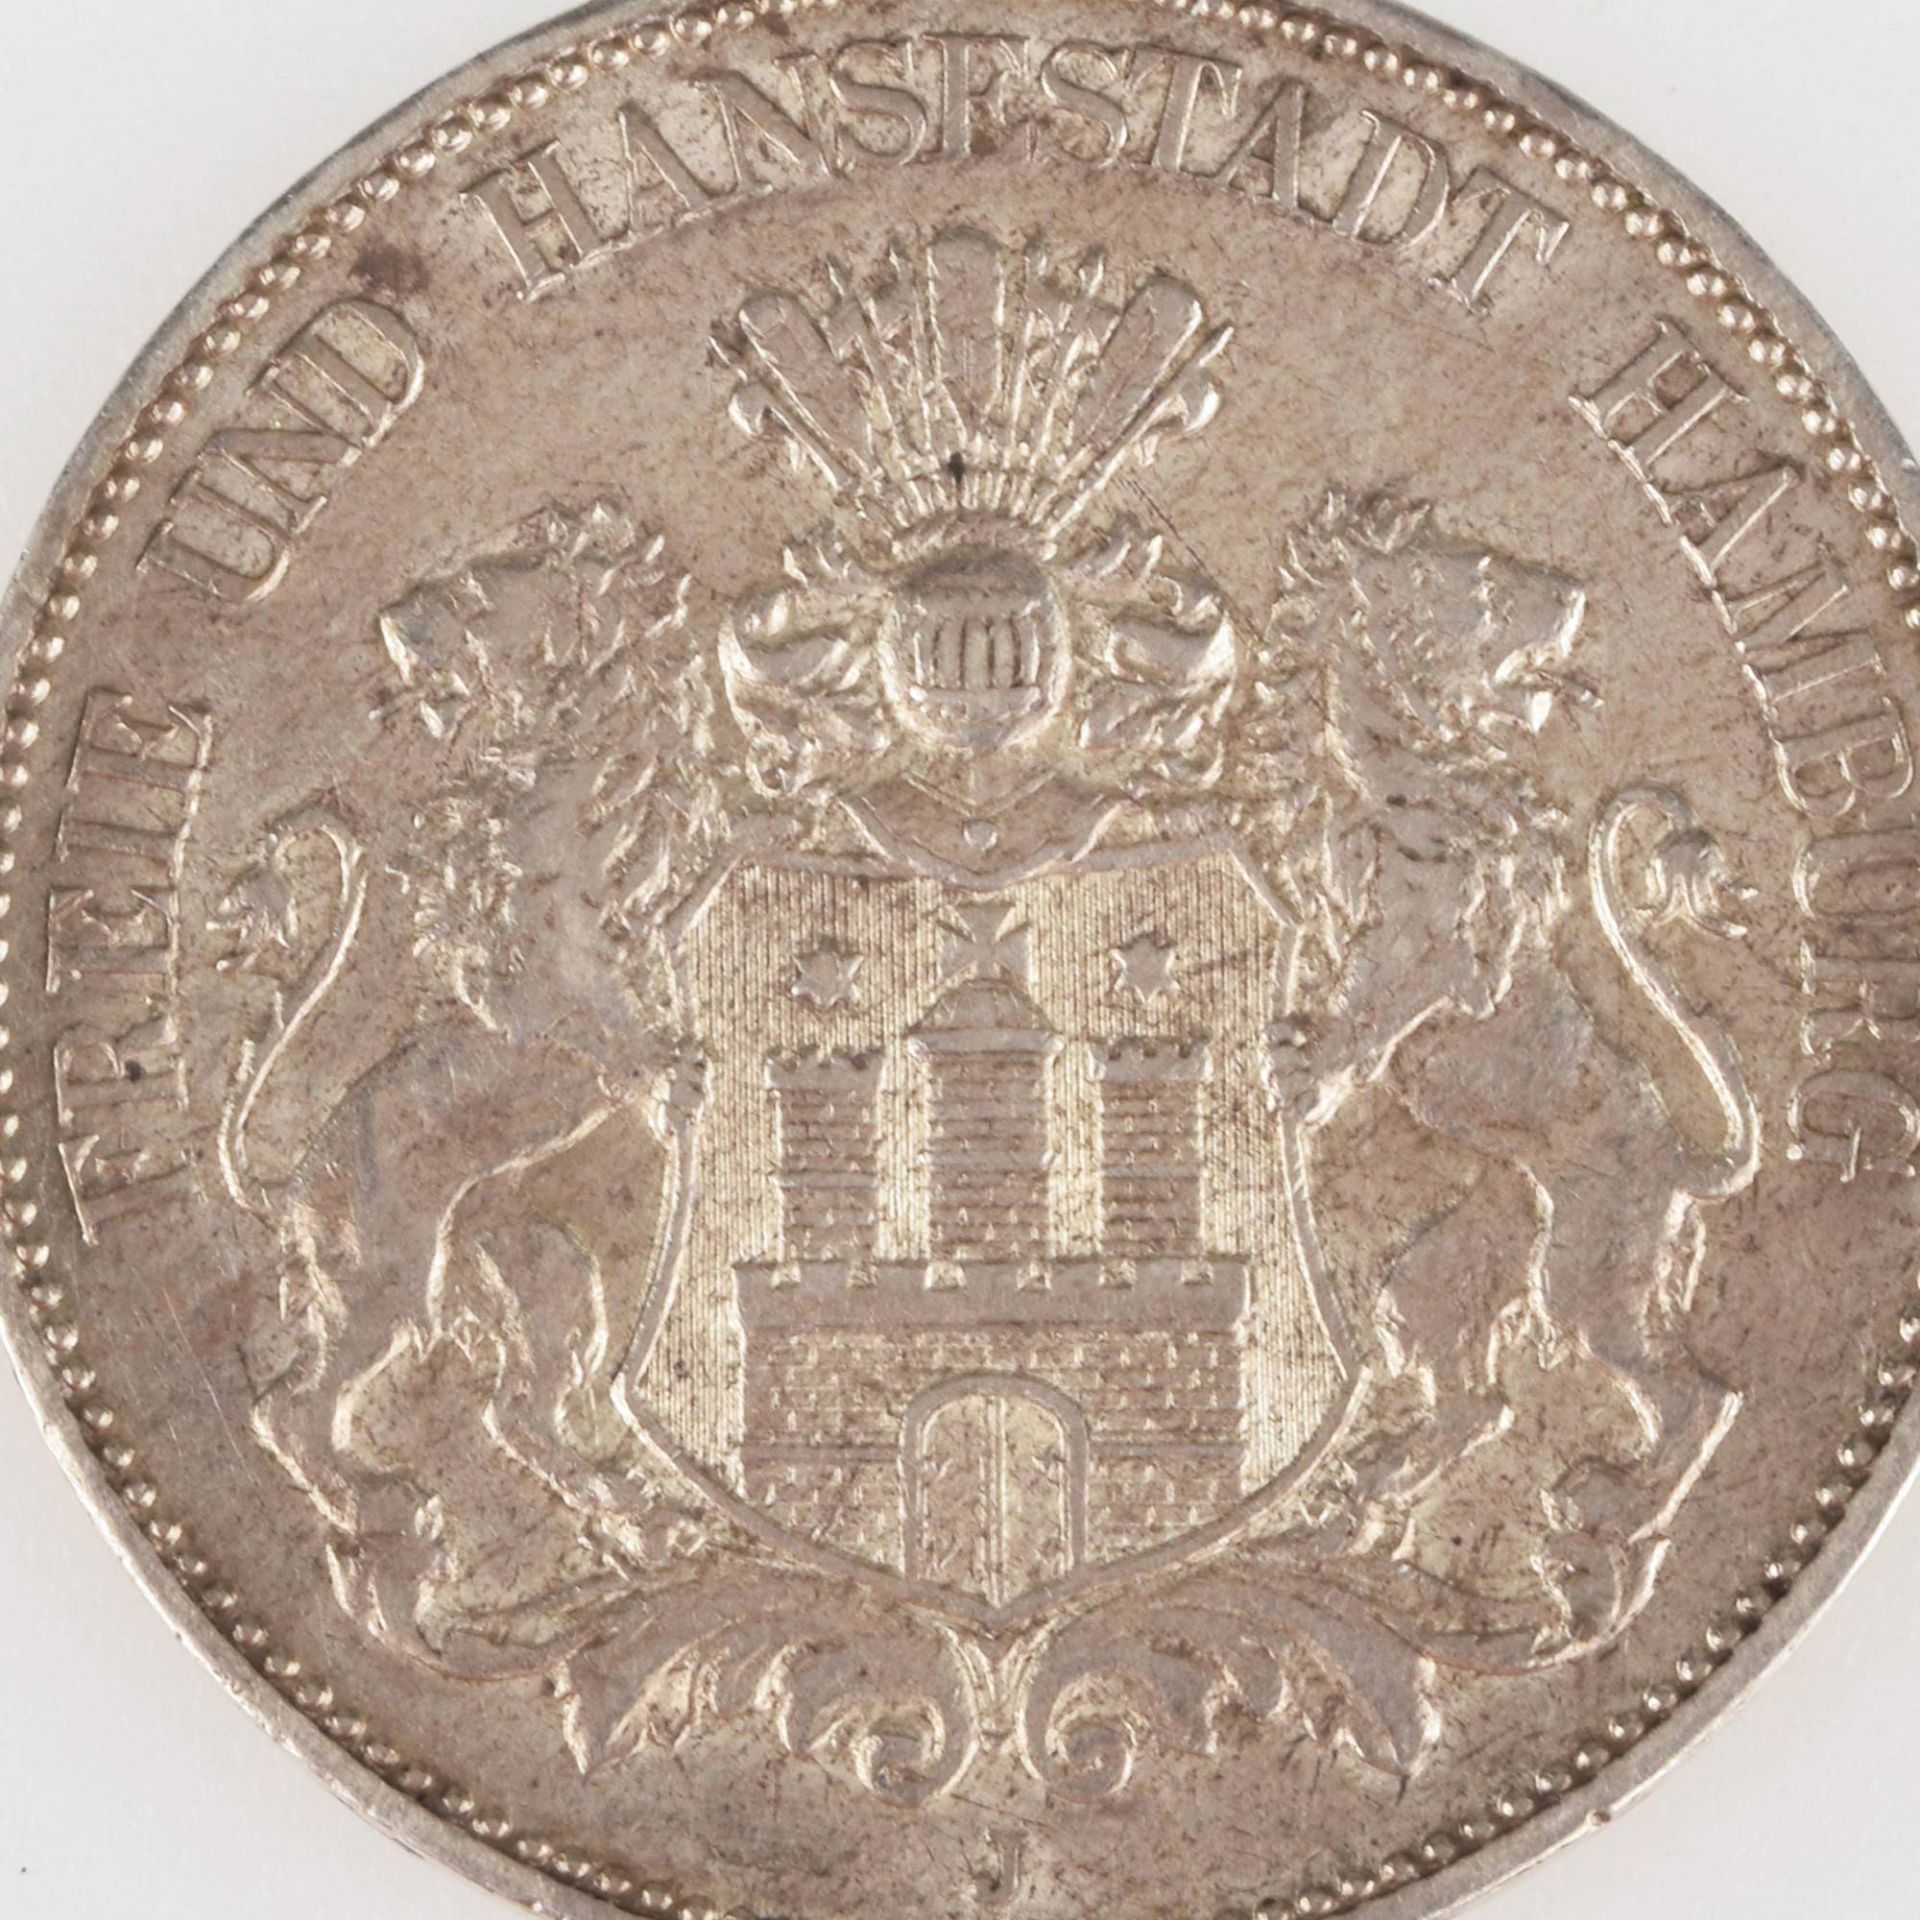 Silbermünze Kaiserreich - Hamburg 1908 5 Mark in Silber, av. Wappen der Freie und Hansestadt Hamburg